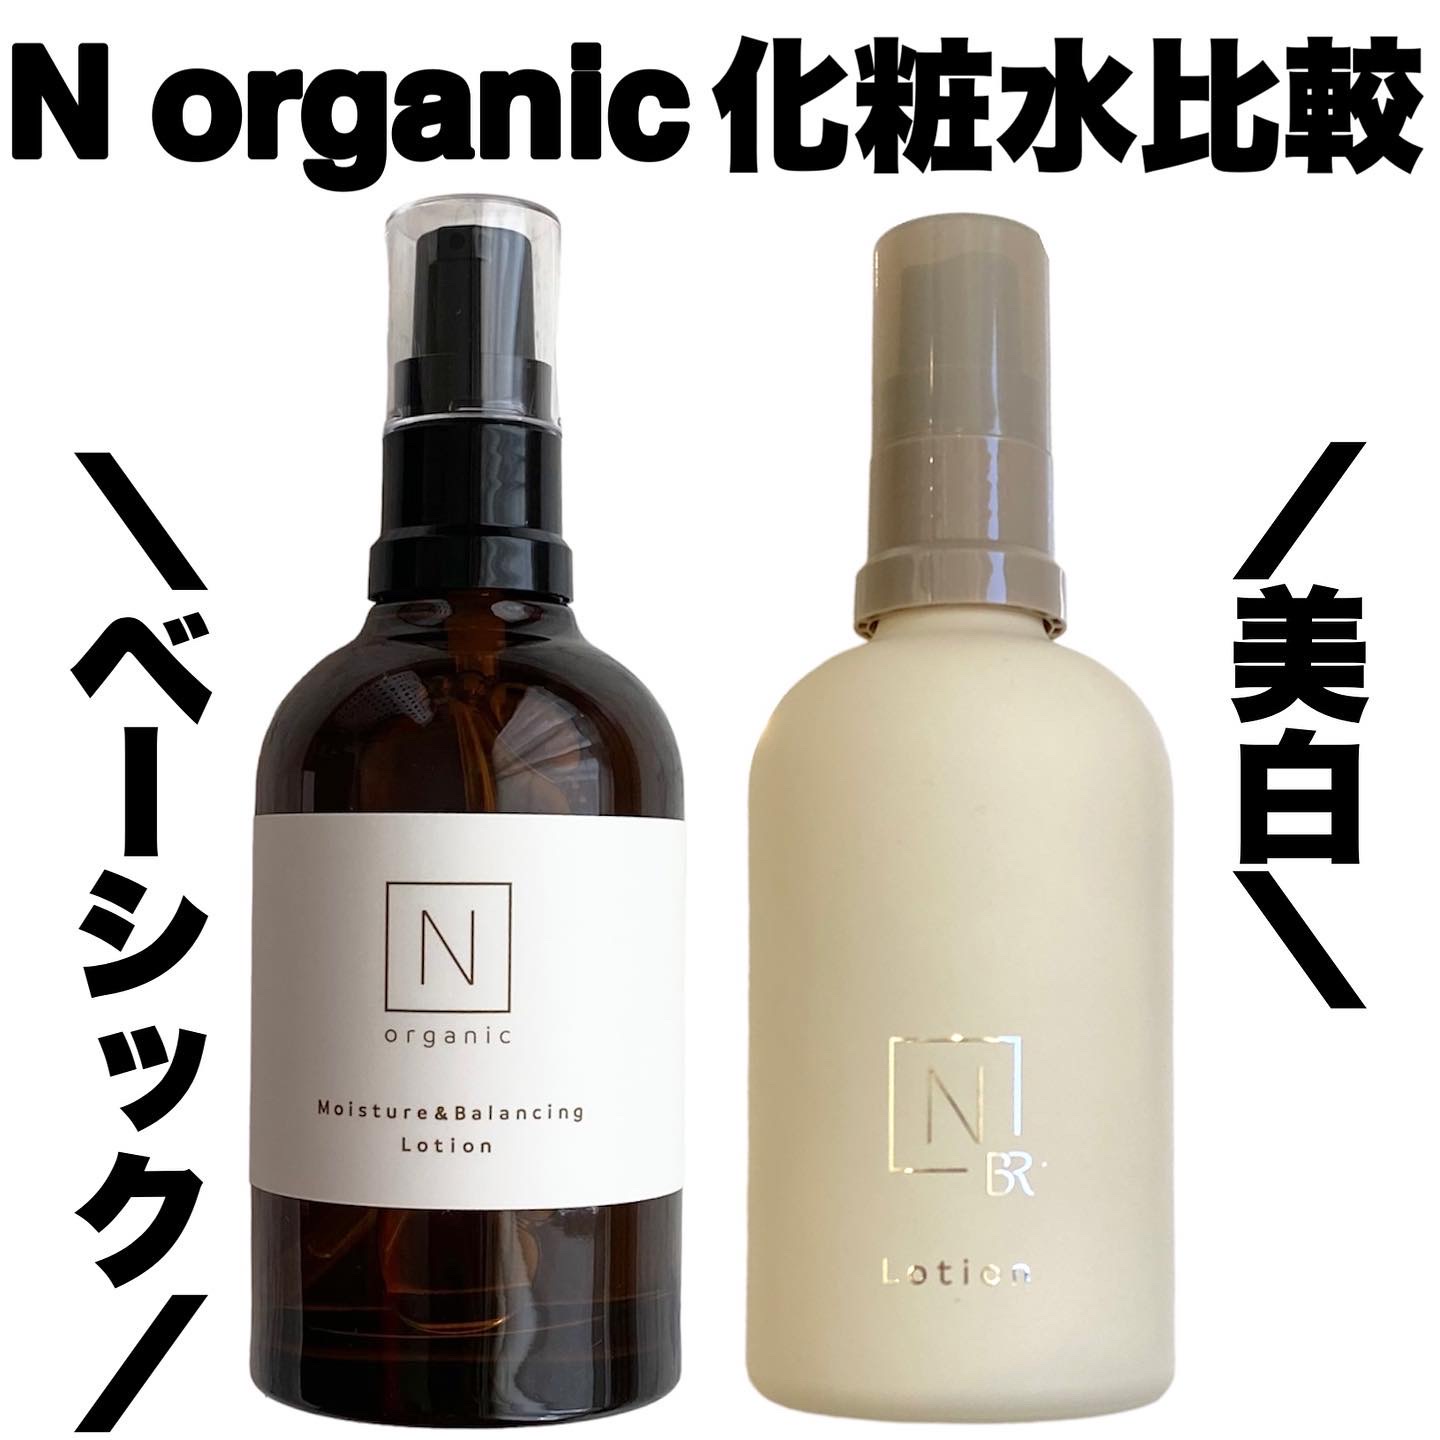 コスメ/美容N organic 化粧水&美容乳液